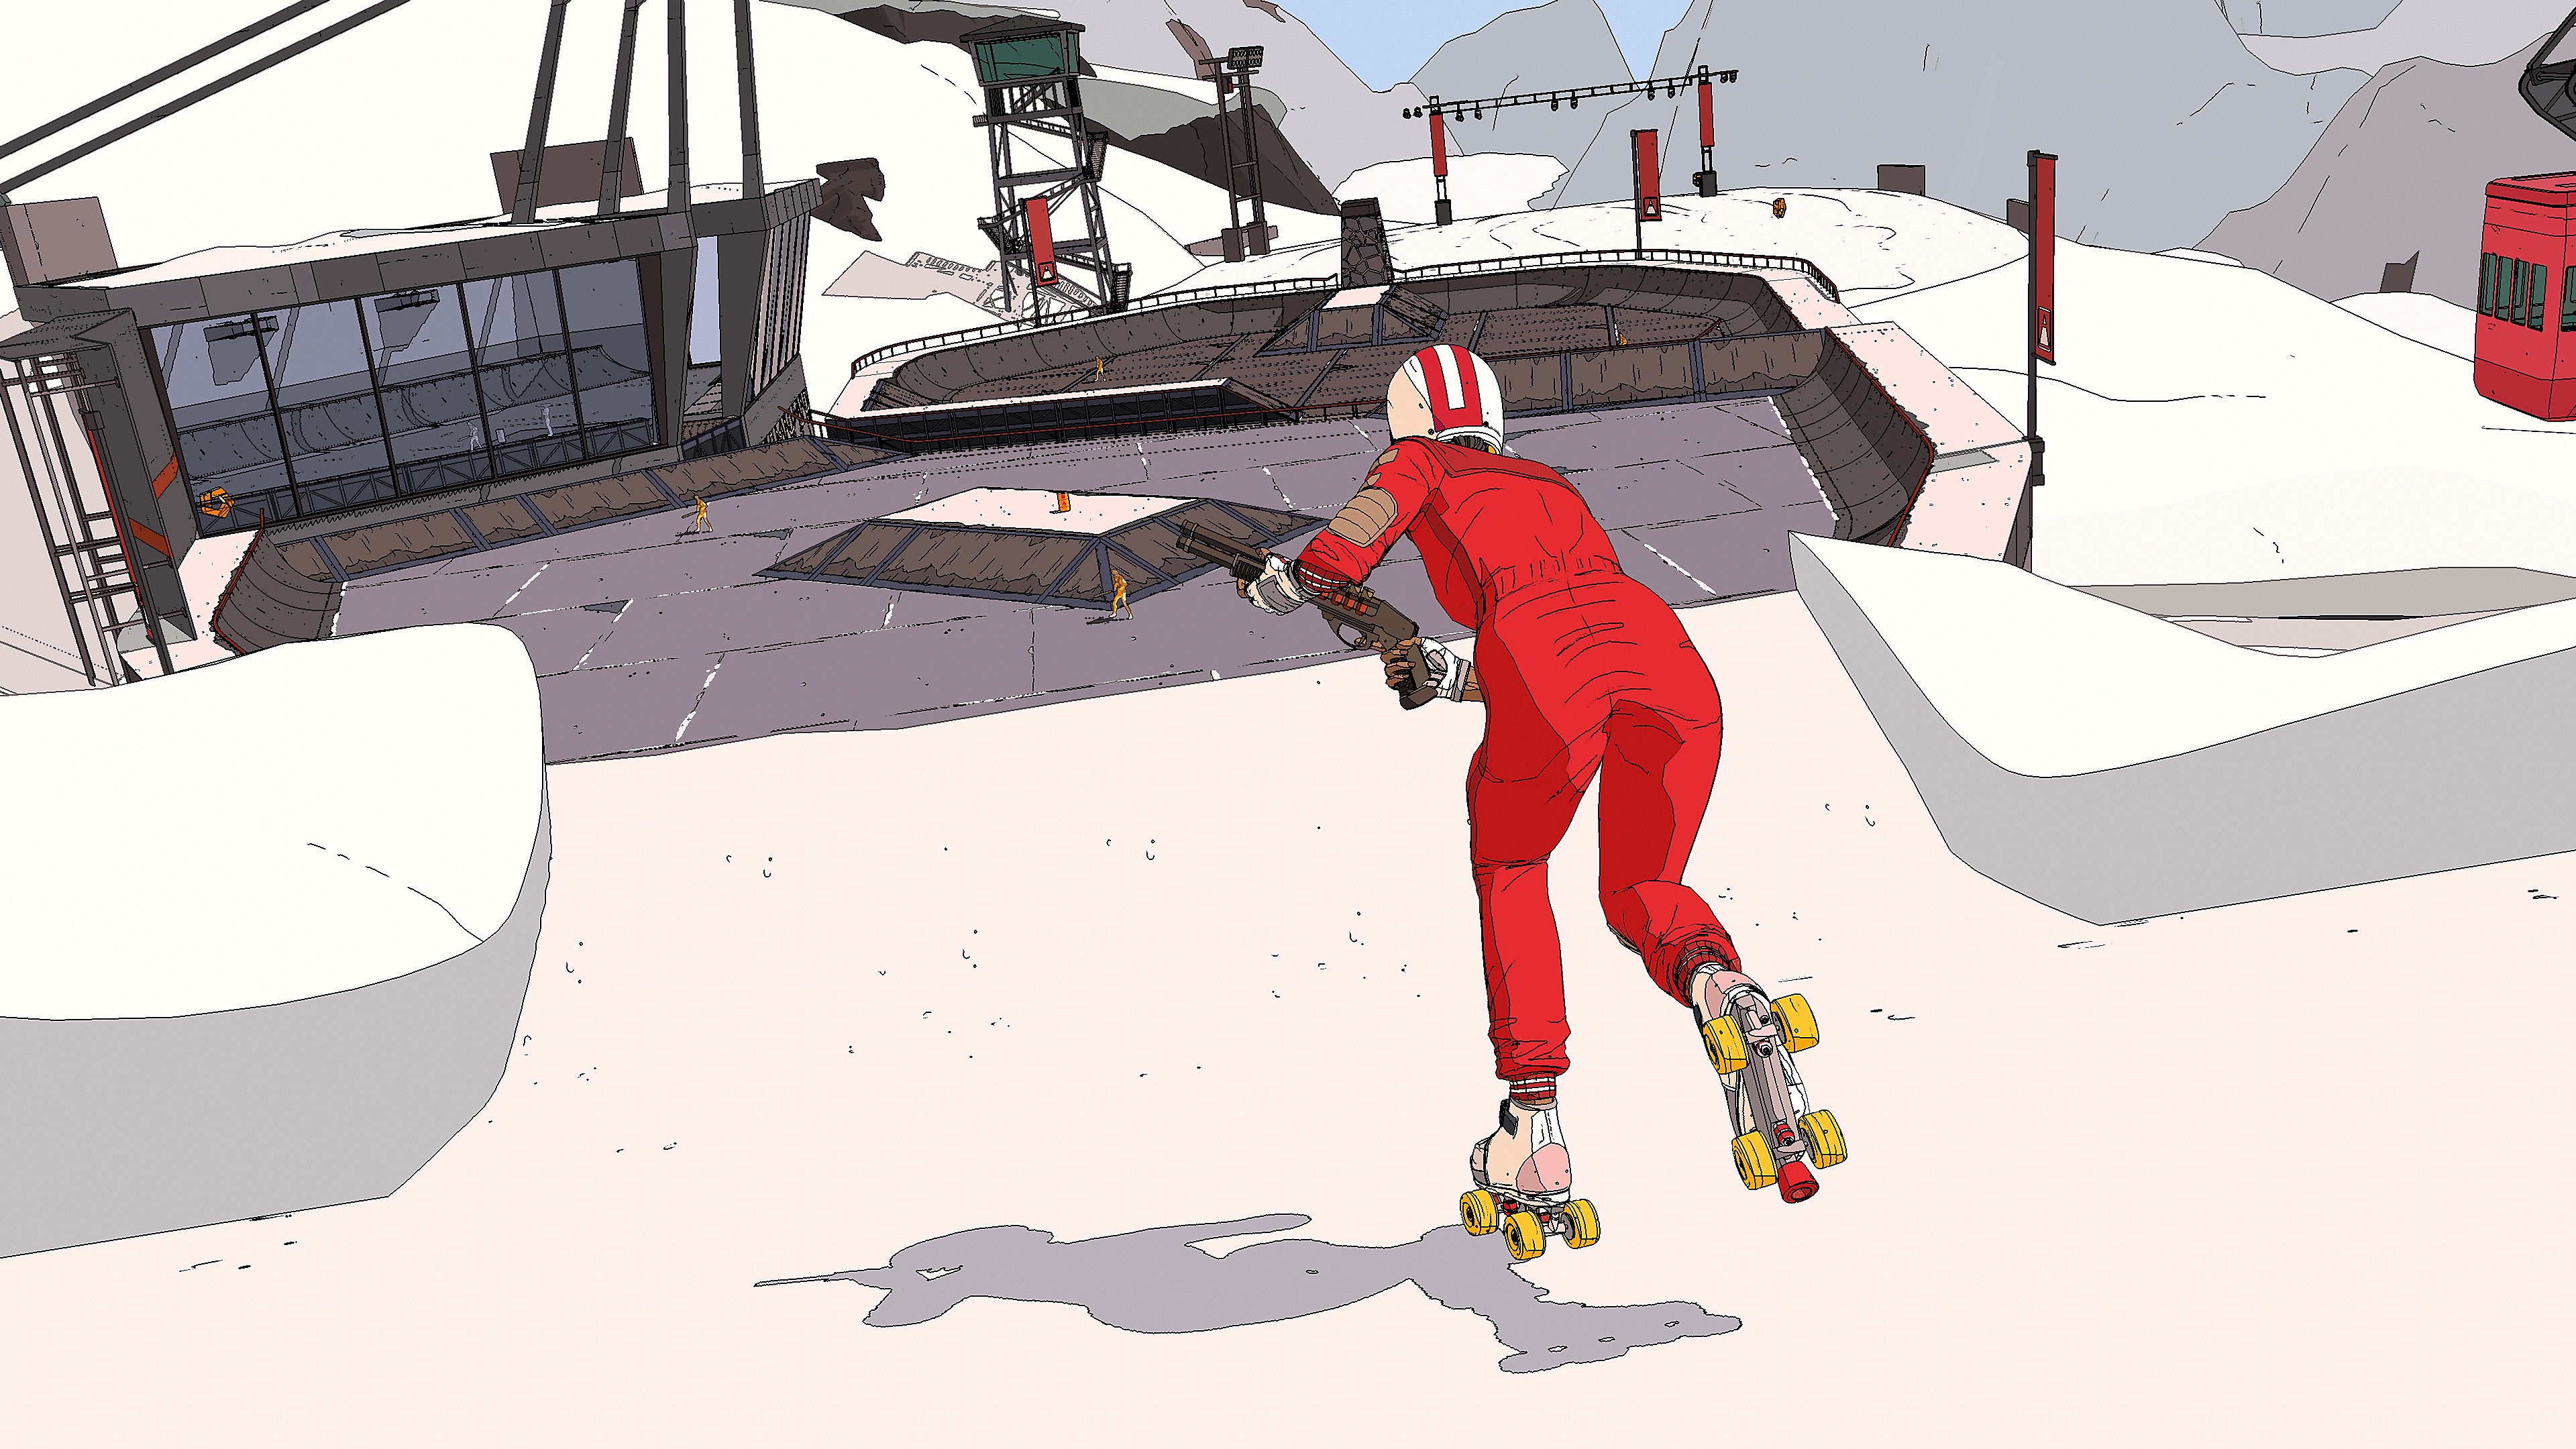 《Rollerdrome》截屏，显示一名穿着连裤工作服、头戴安全帽的滑板玩家一边玩滑板一边用霰弹枪射击